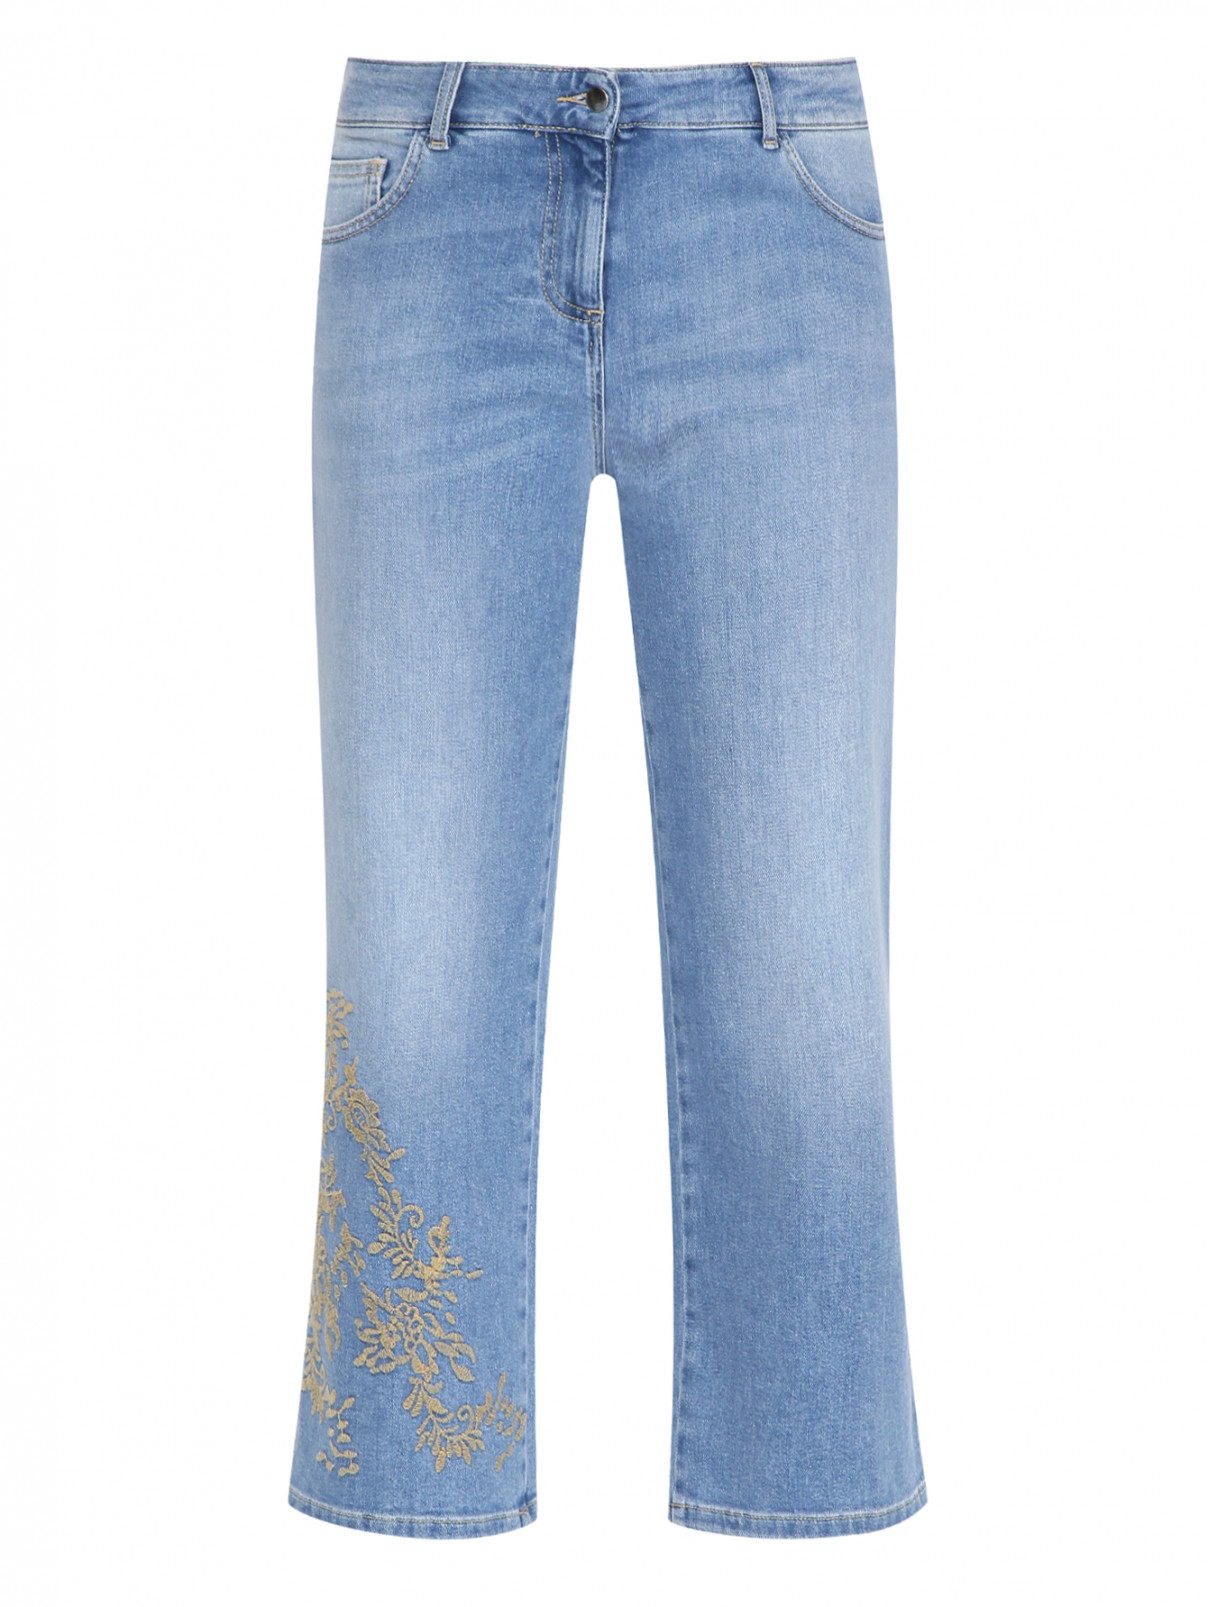 Укороченные джинсы с вышивкой Persona by Marina Rinaldi  –  Общий вид  – Цвет:  Синий